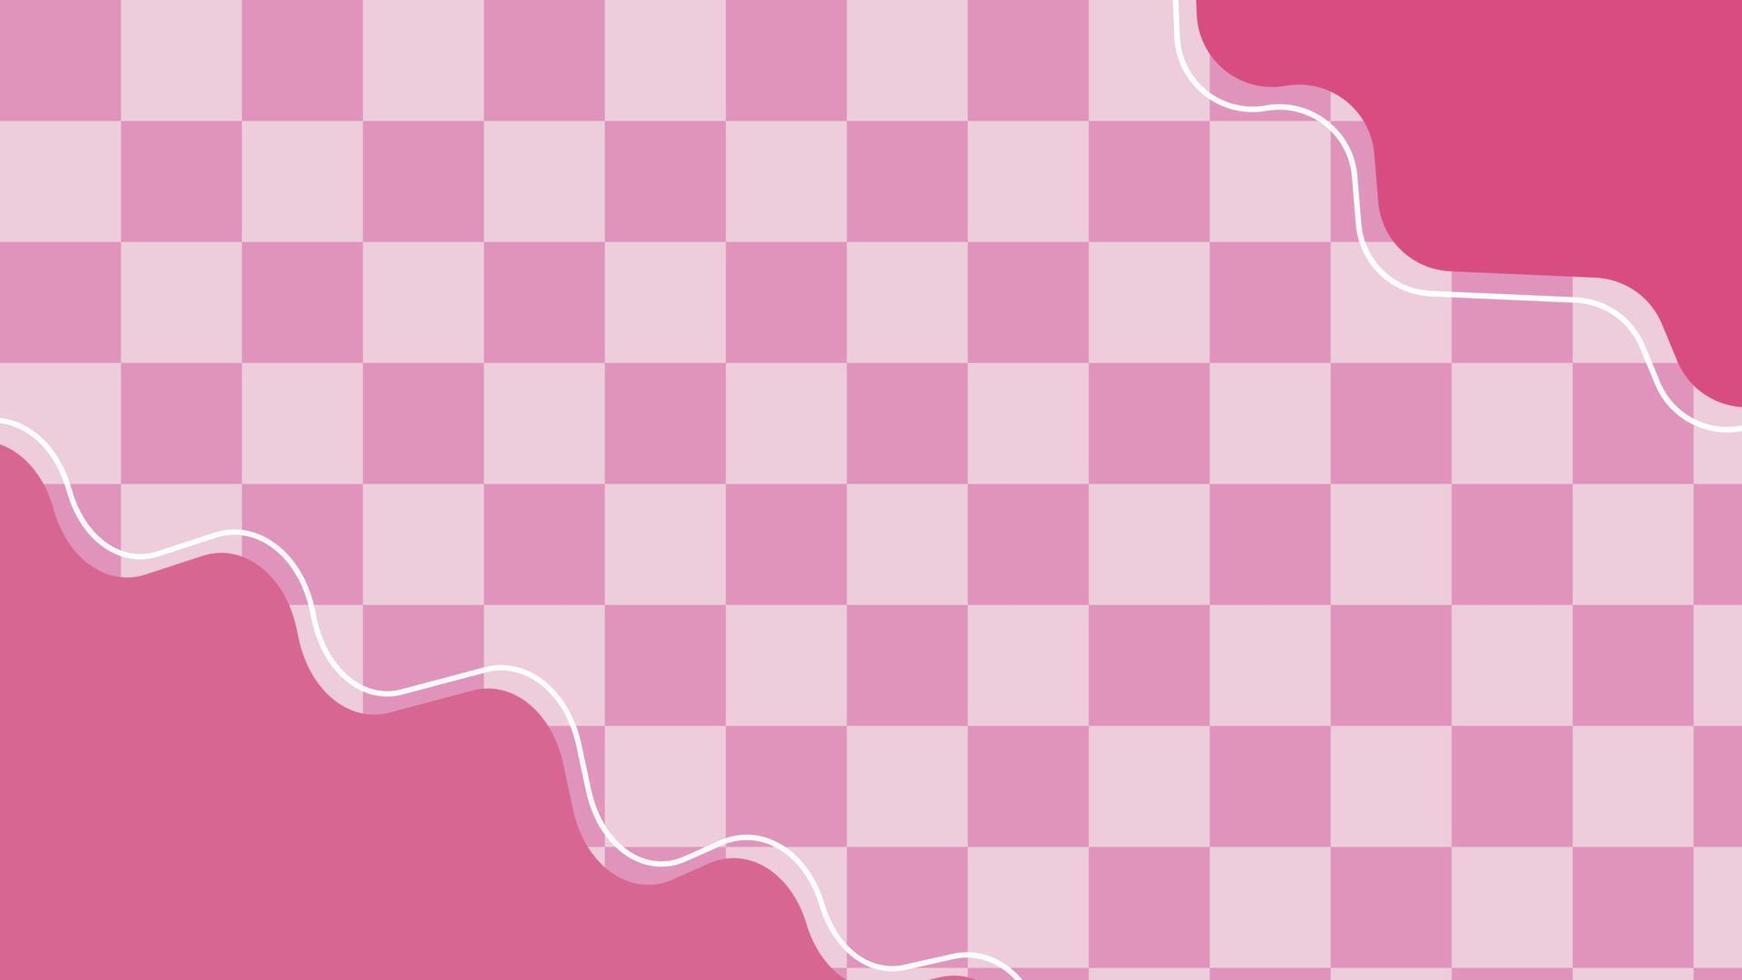 Damas rosadas lindas estéticas, tablero de ajedrez, guinga, tela escocesa, fondo de patrón de tartán, perfecto para papel tapiz, telón de fondo, postal, fondo vector